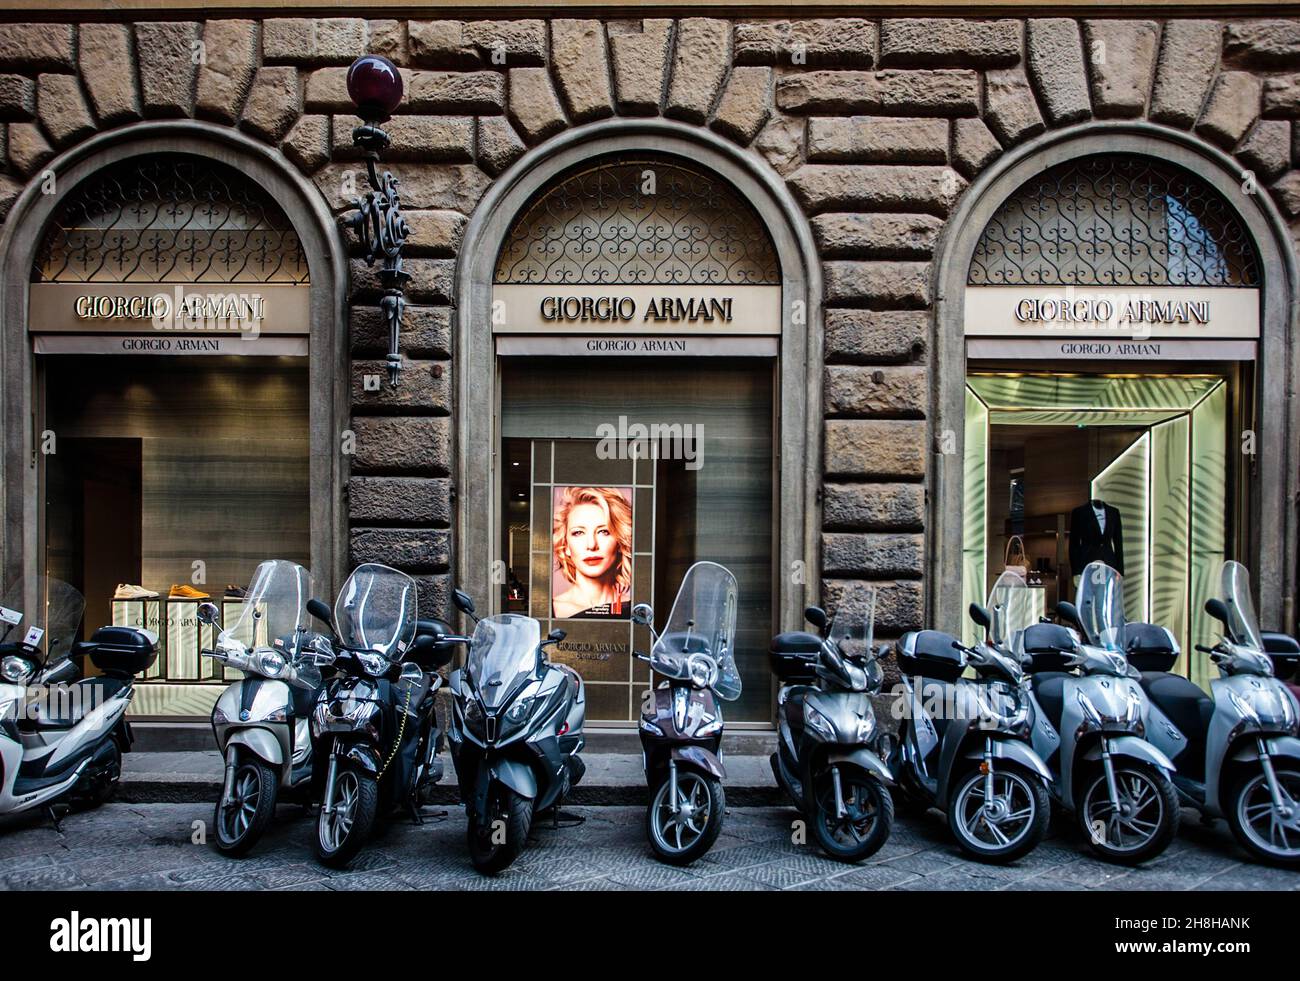 Les motos se trouvent en face de la boutique Giorgio Armani, via Tornabuoni, Florence.Italie Banque D'Images